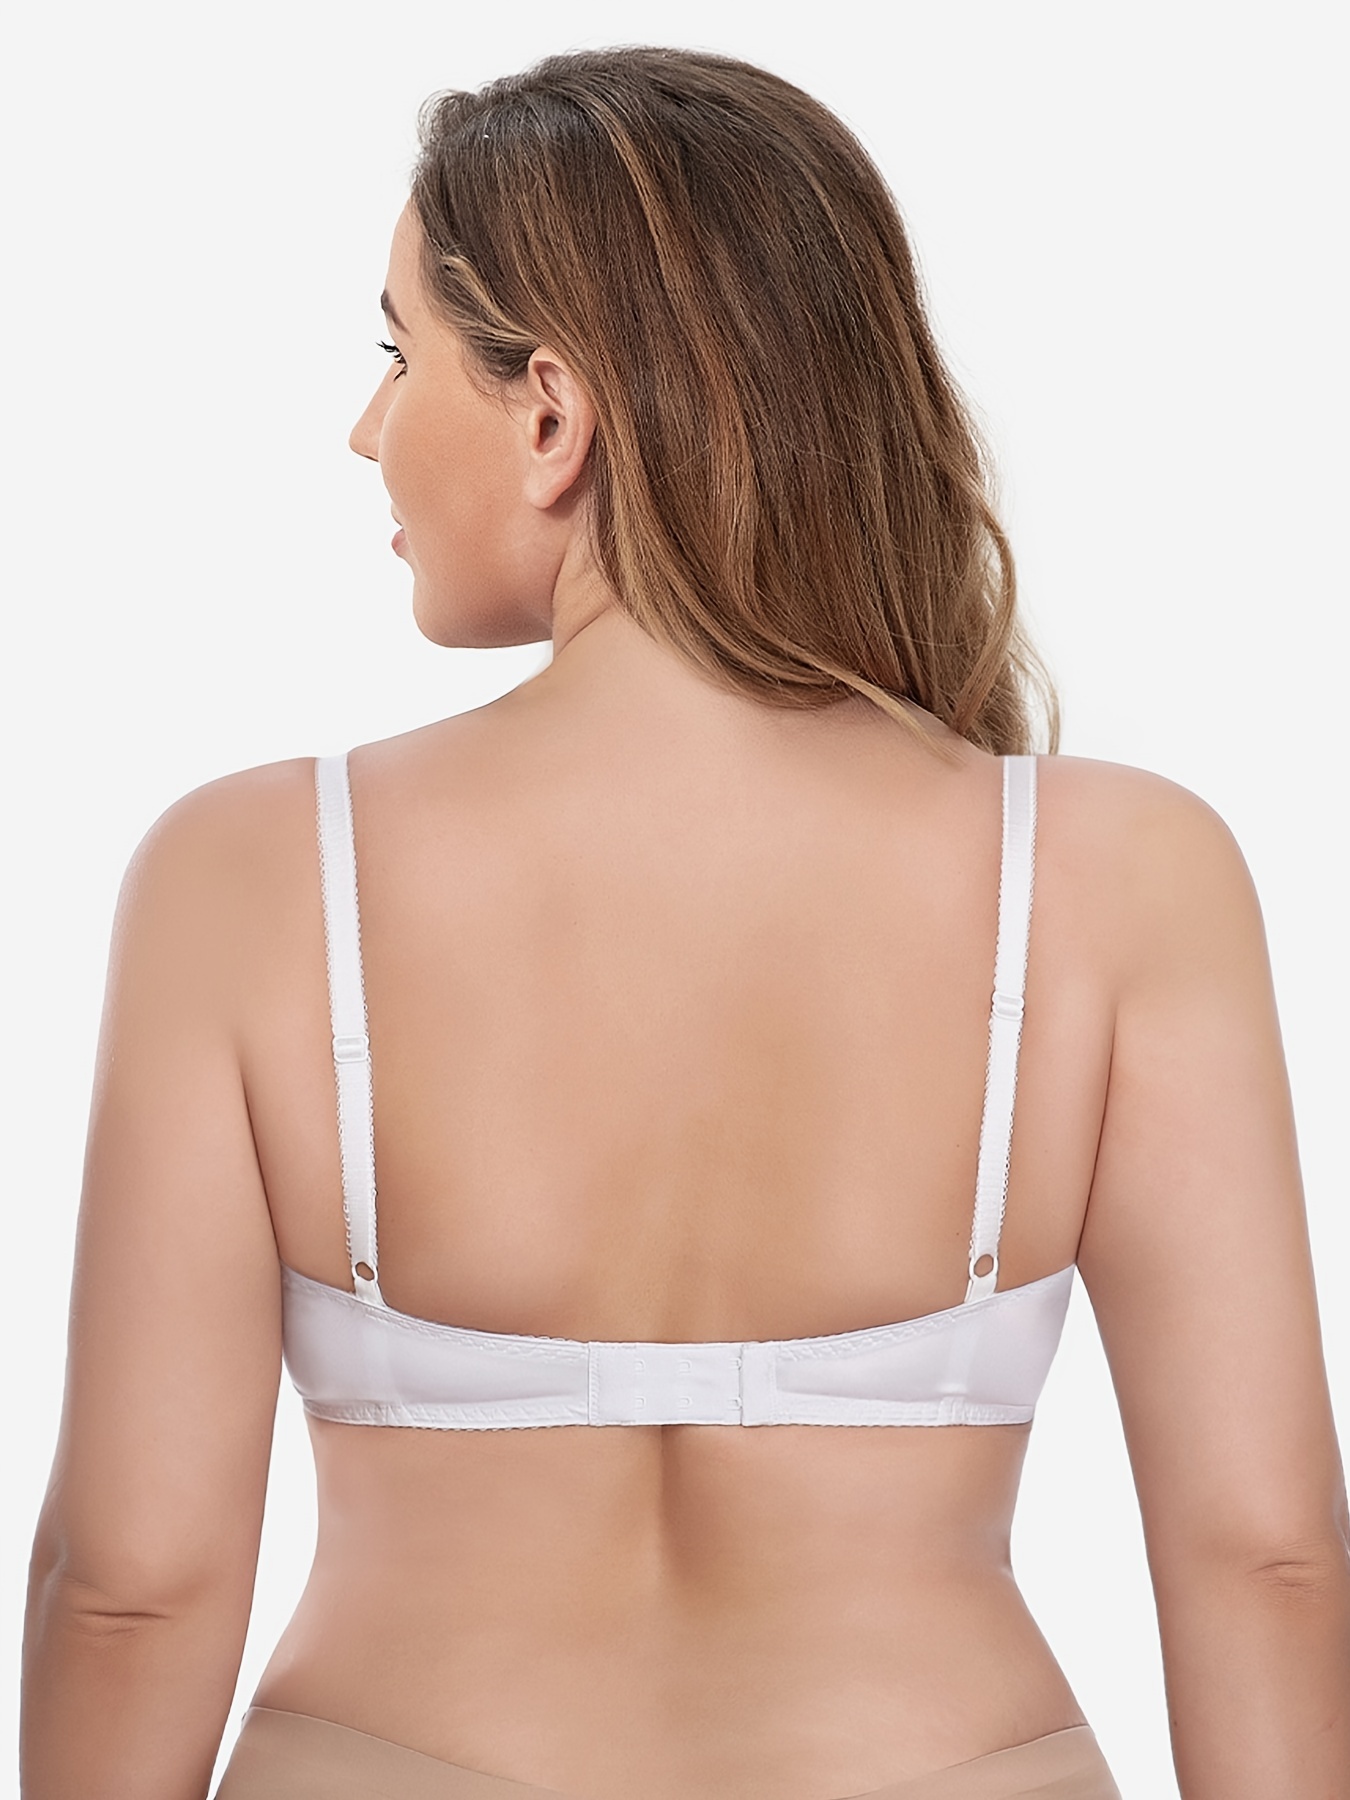 Women's Bra Plus Size Bras For Women Underwear Unlined Lace